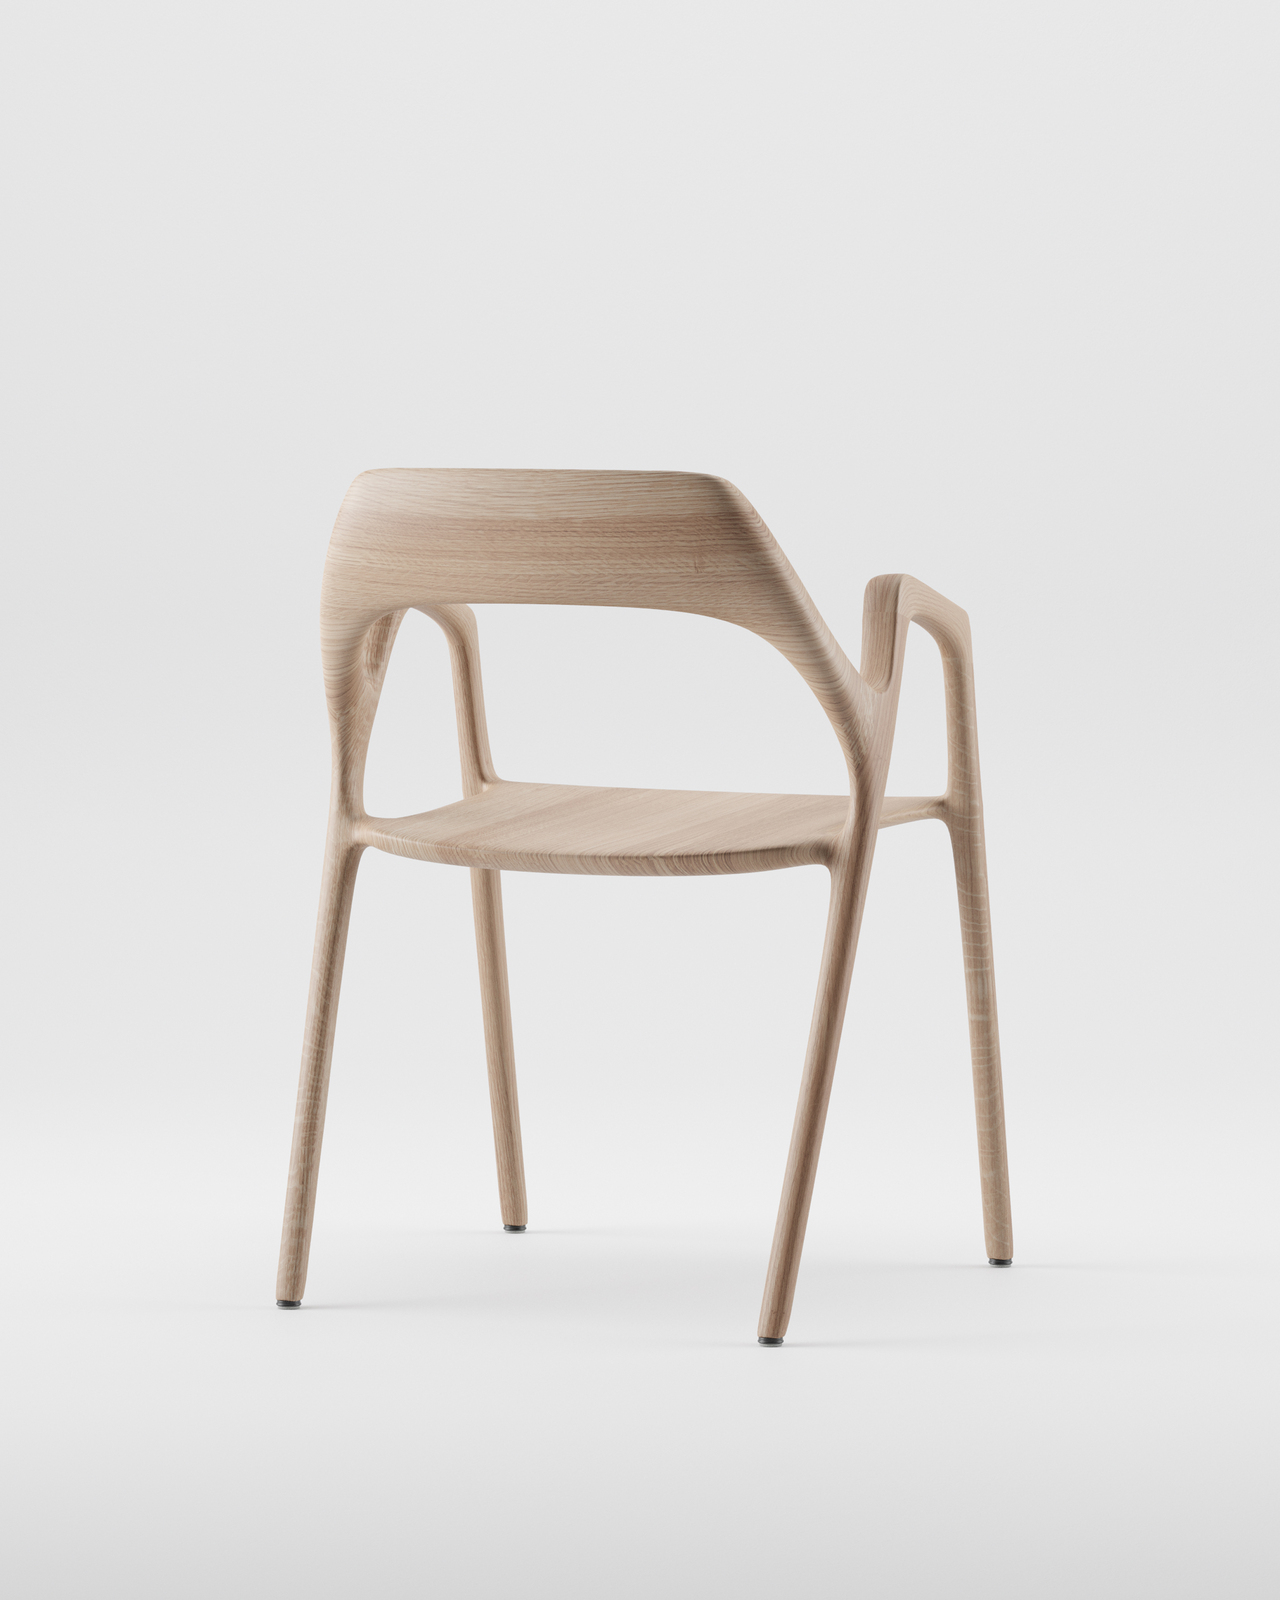 洪勤哲（Alan Hung）設計家具弓椅Ging Chair系列